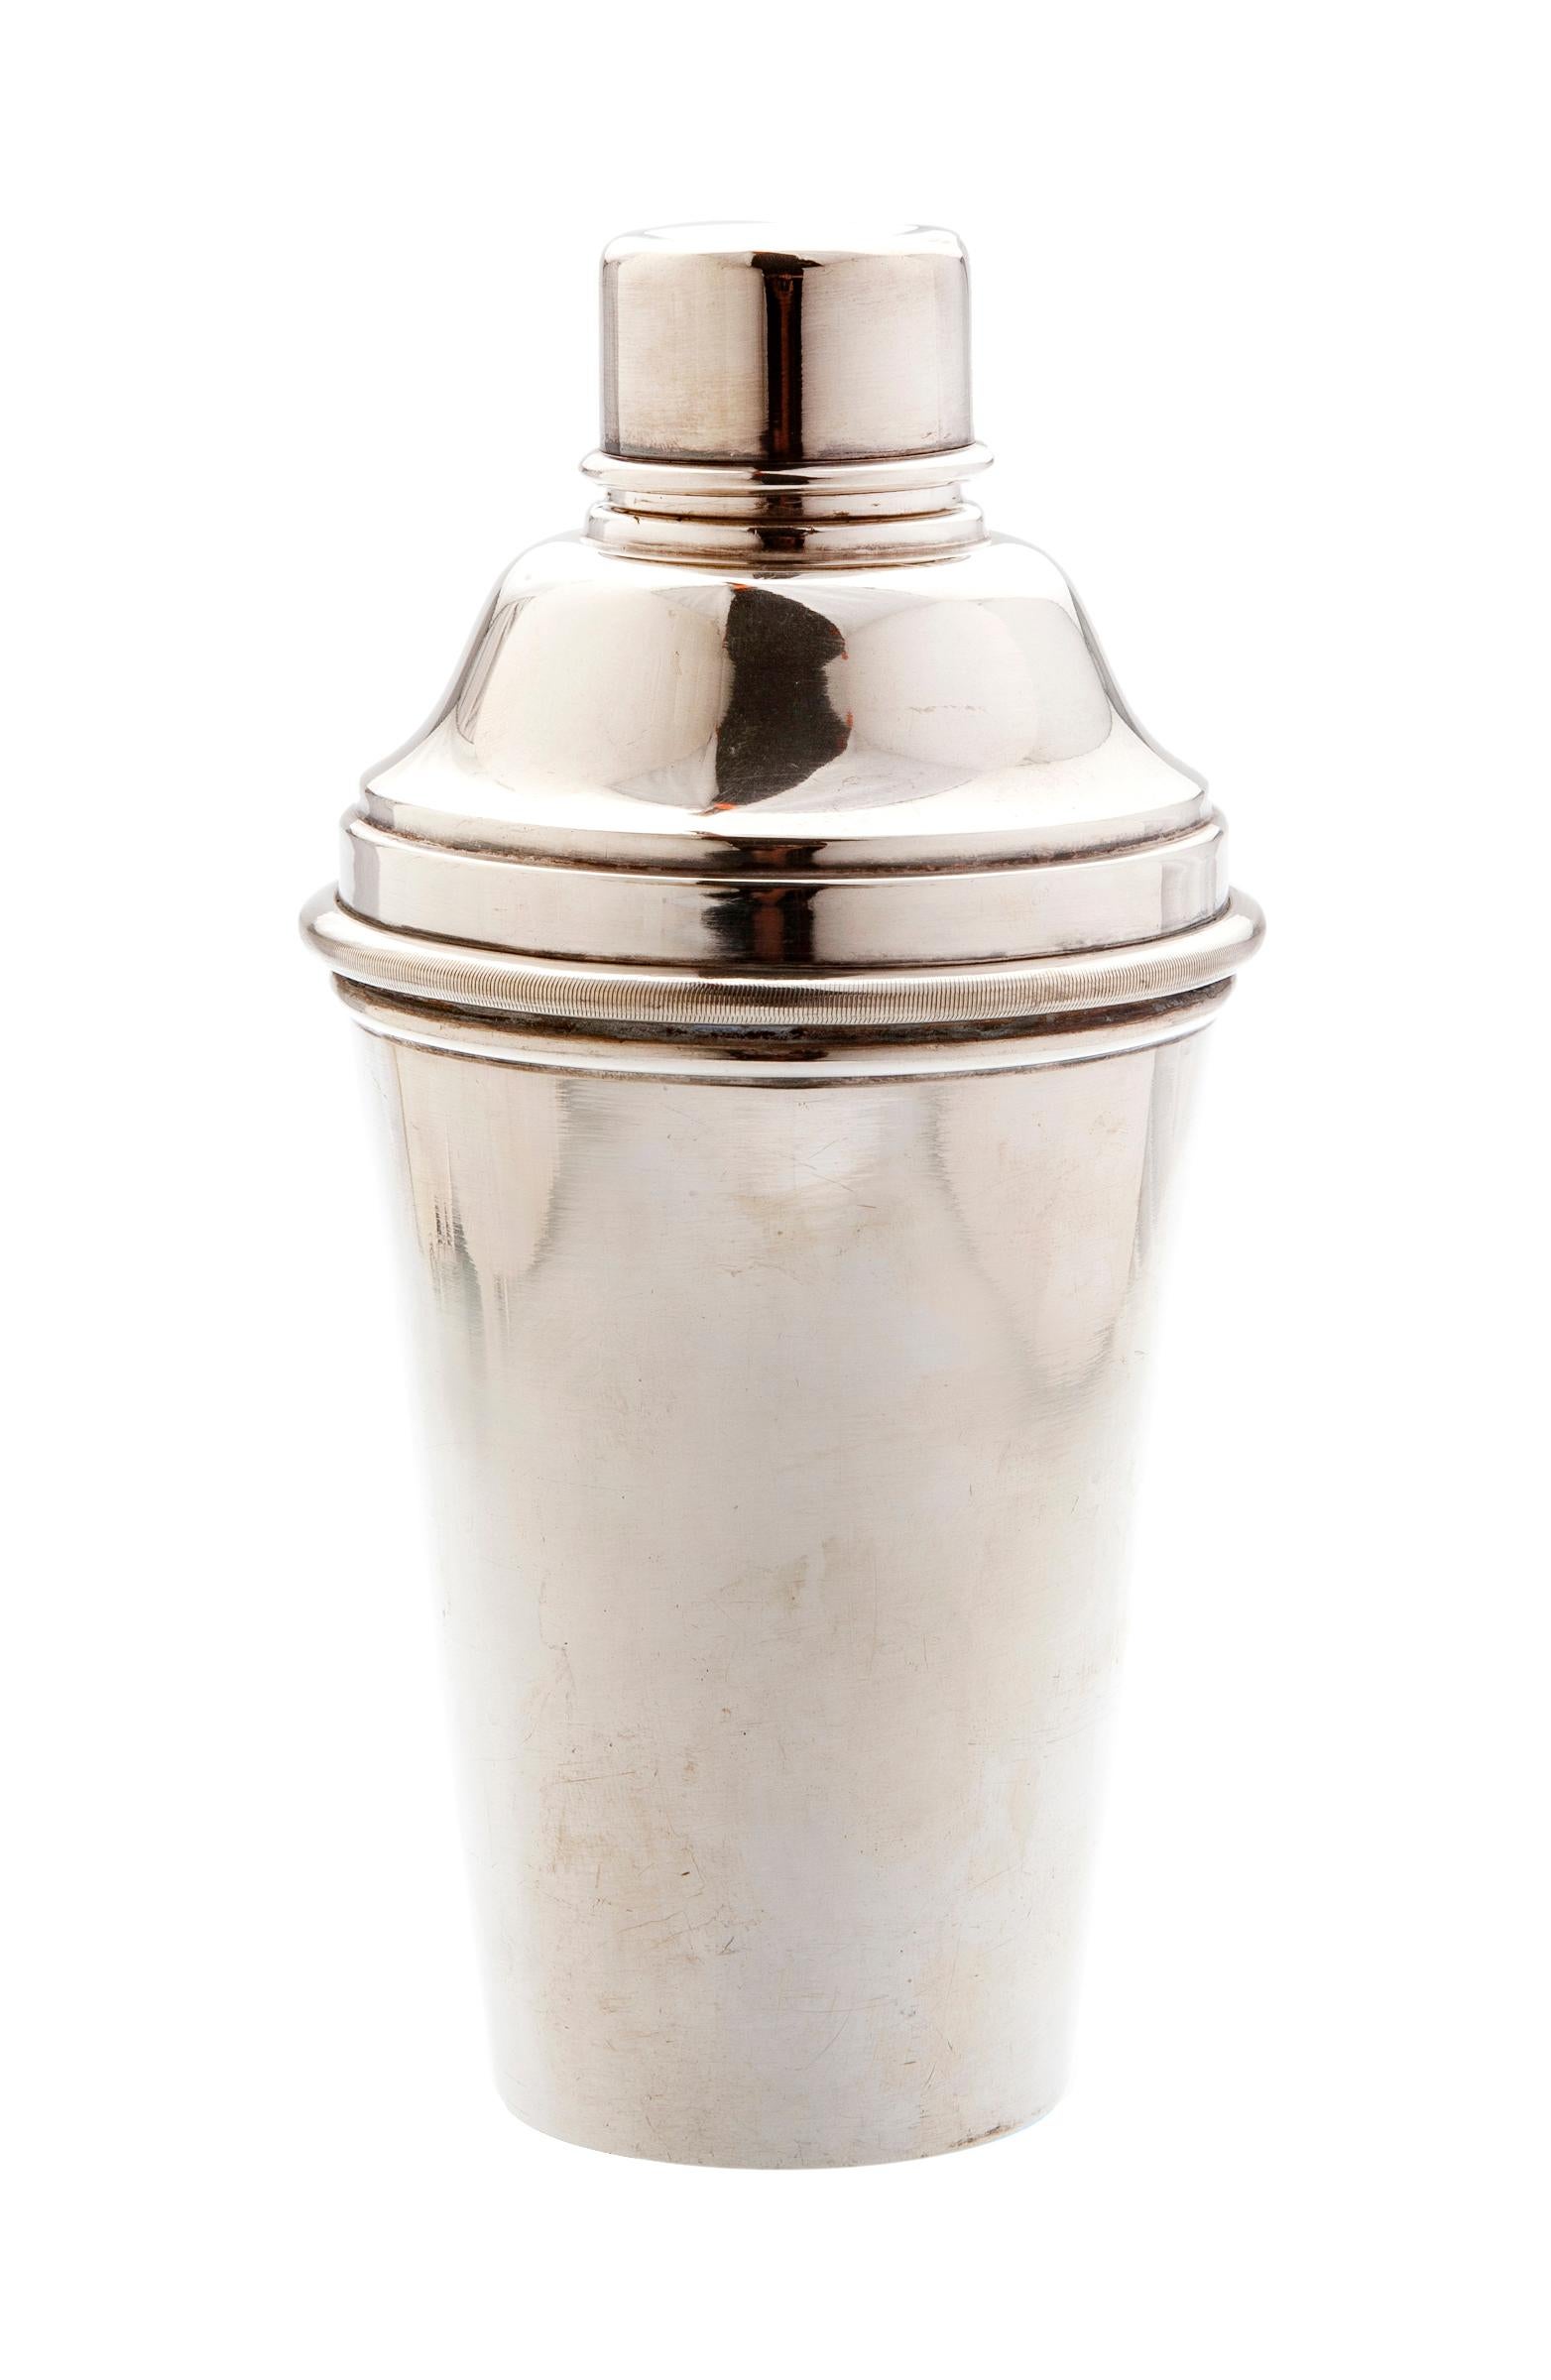 Shaker à martini européen Art Déco / Début de la modernité en métal argenté avec un corps cylindrique conique.
Petite impression, pas de nom, juste mls35.